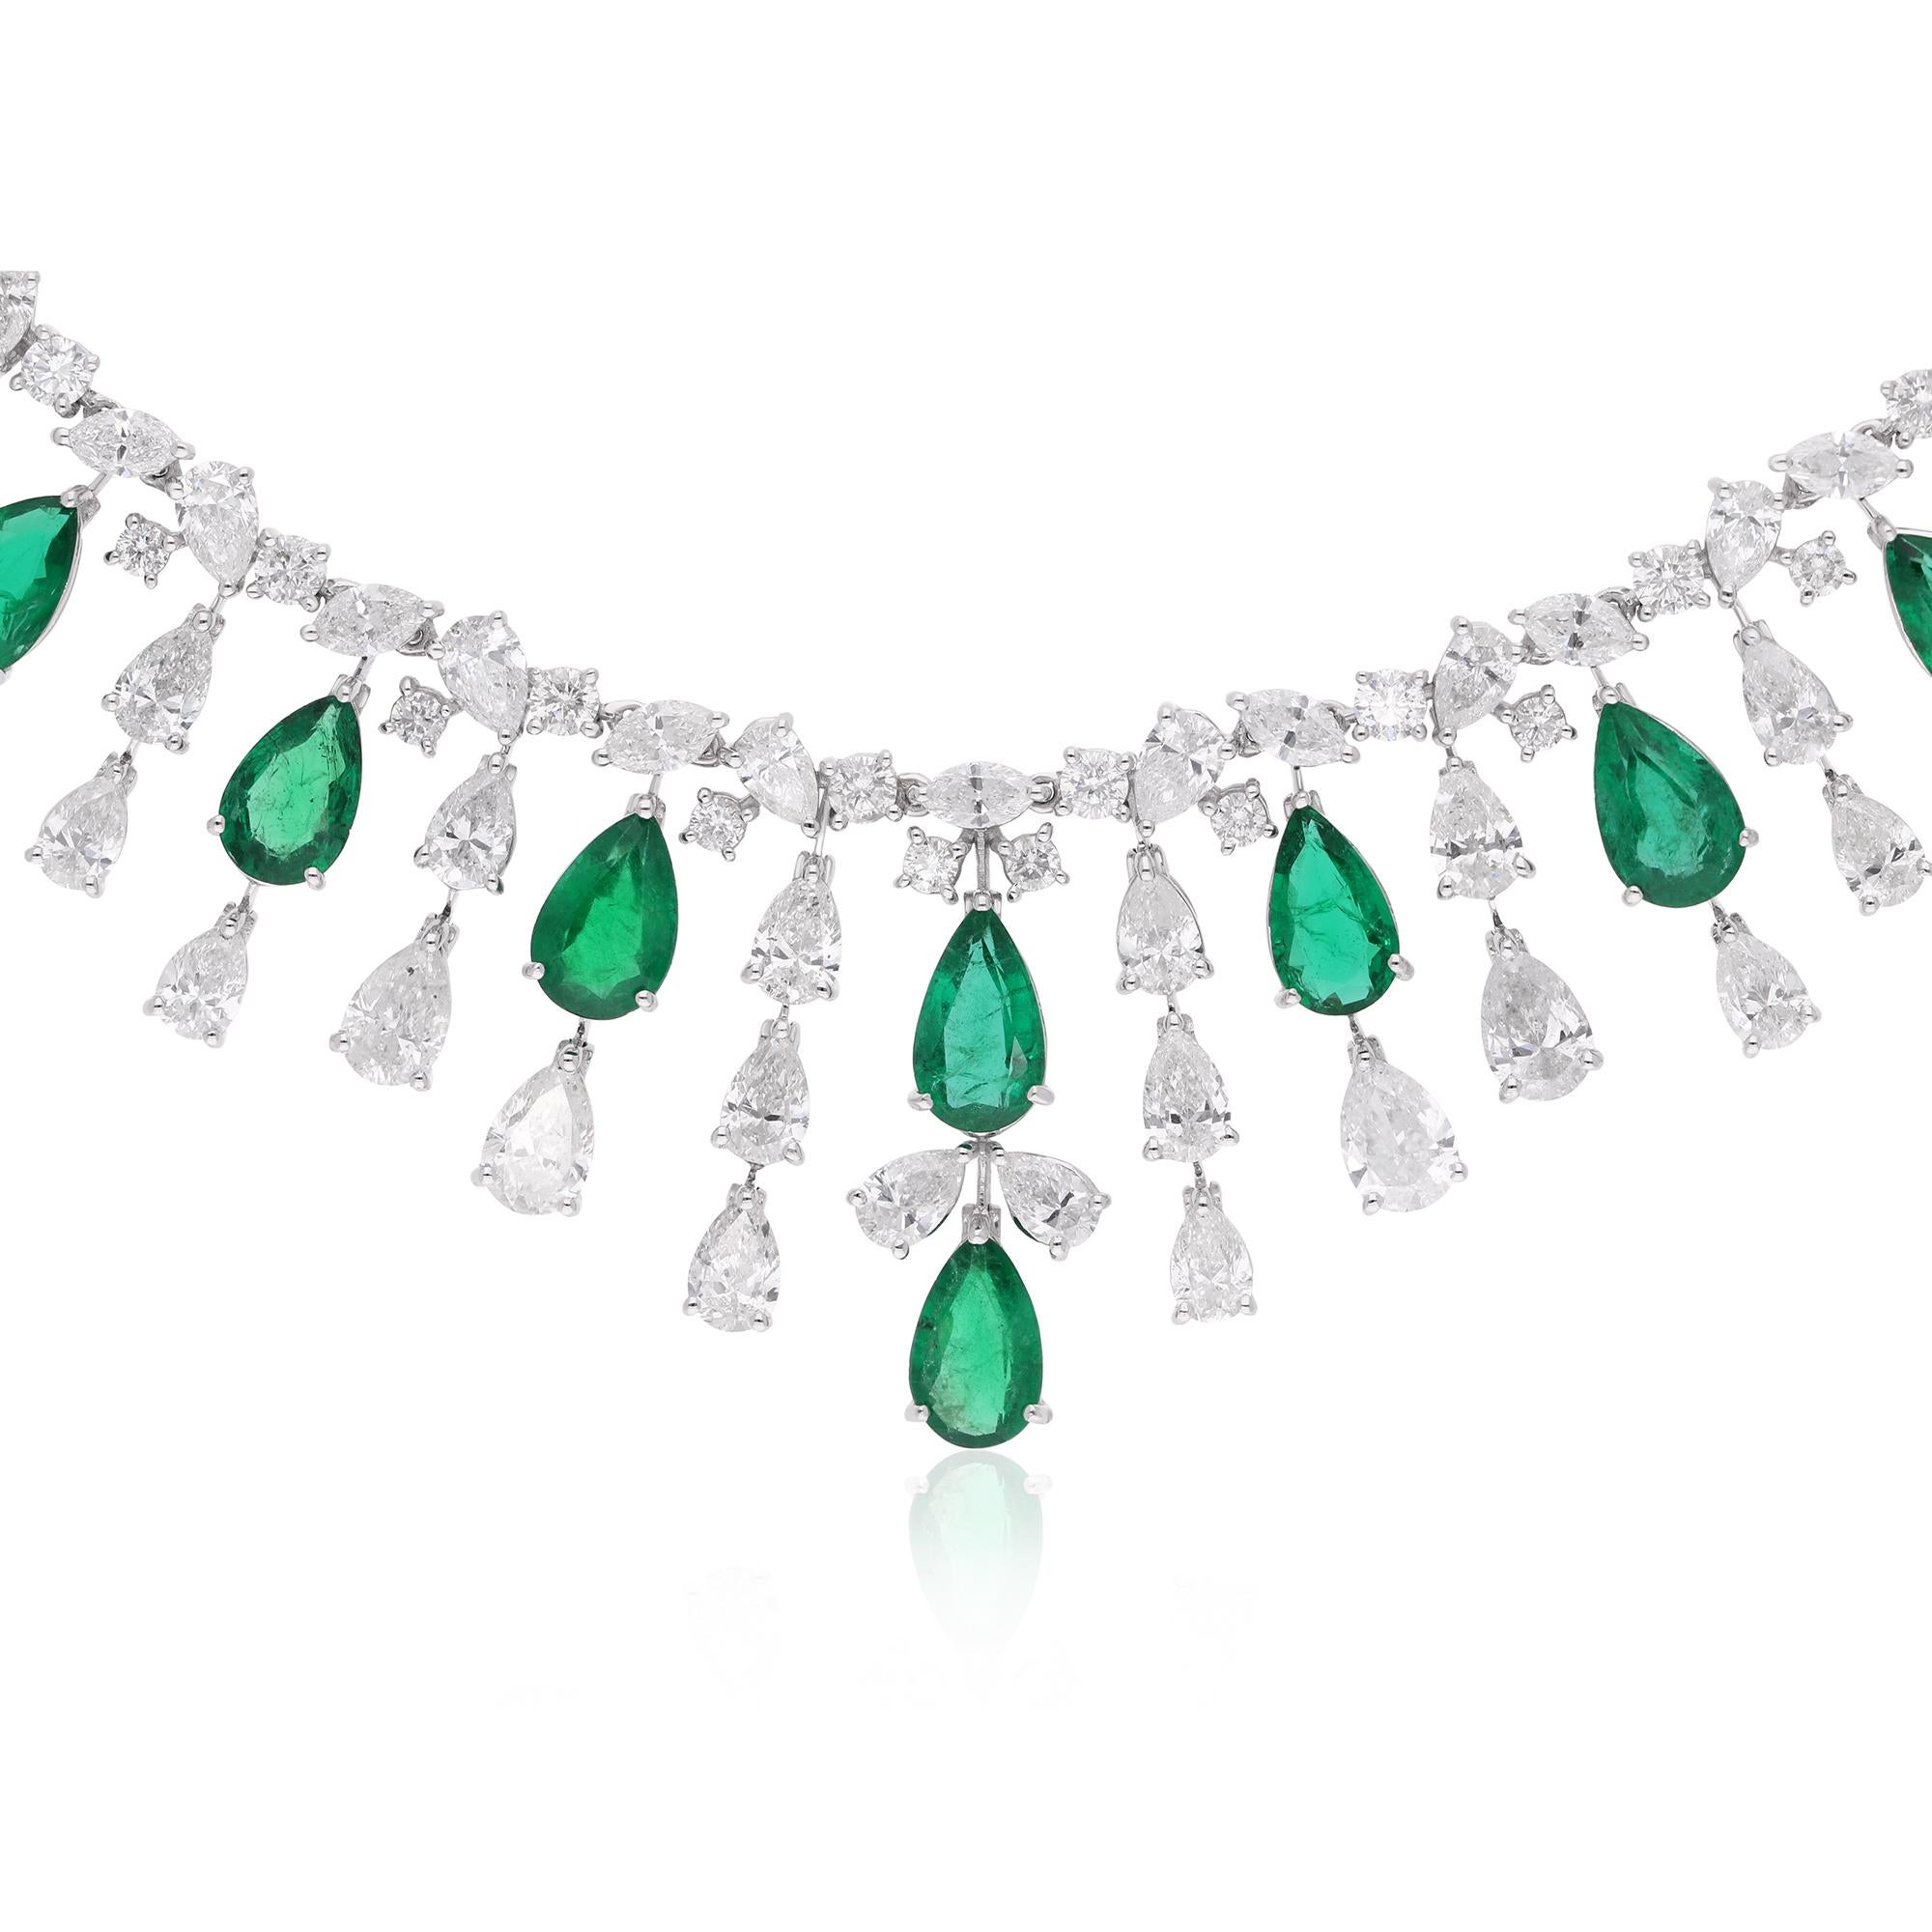 Der Smaragd ist von schimmernden Diamanten umgeben, die sorgfältig in einem Halo-Design gefasst sind. Diese Diamanten, die aufgrund ihrer außergewöhnlichen Brillanz und ihres Feuers ausgewählt wurden, verleihen dem Collier einen Hauch von Luxus und